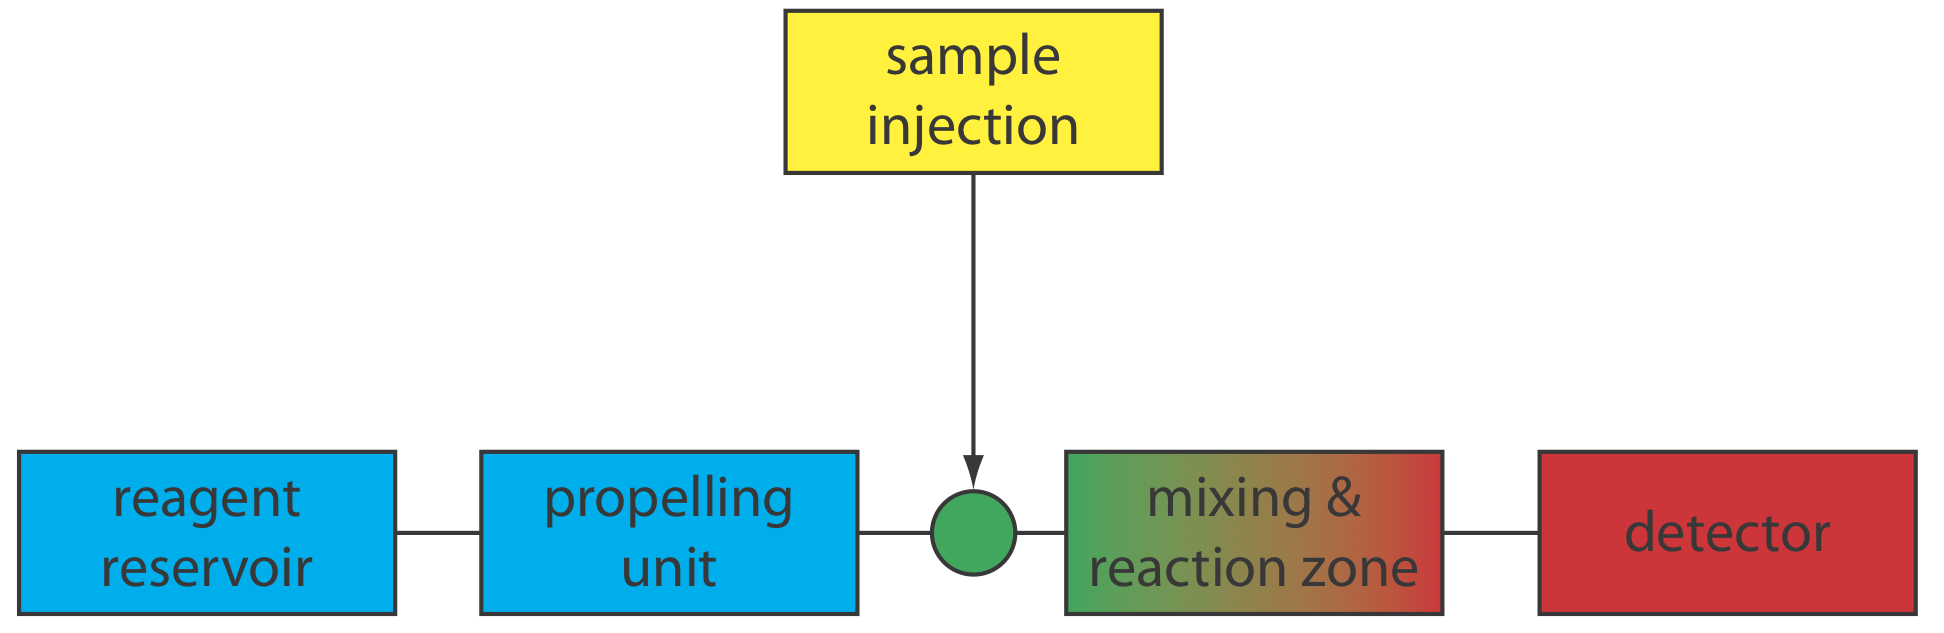 El reactivo sale del reservorio a través de una unidad de propulsión donde entra en contacto con la muestra a través de la inyección. Después de la inyección, hay una zona de mezcla y reacción y finalmente, detección.